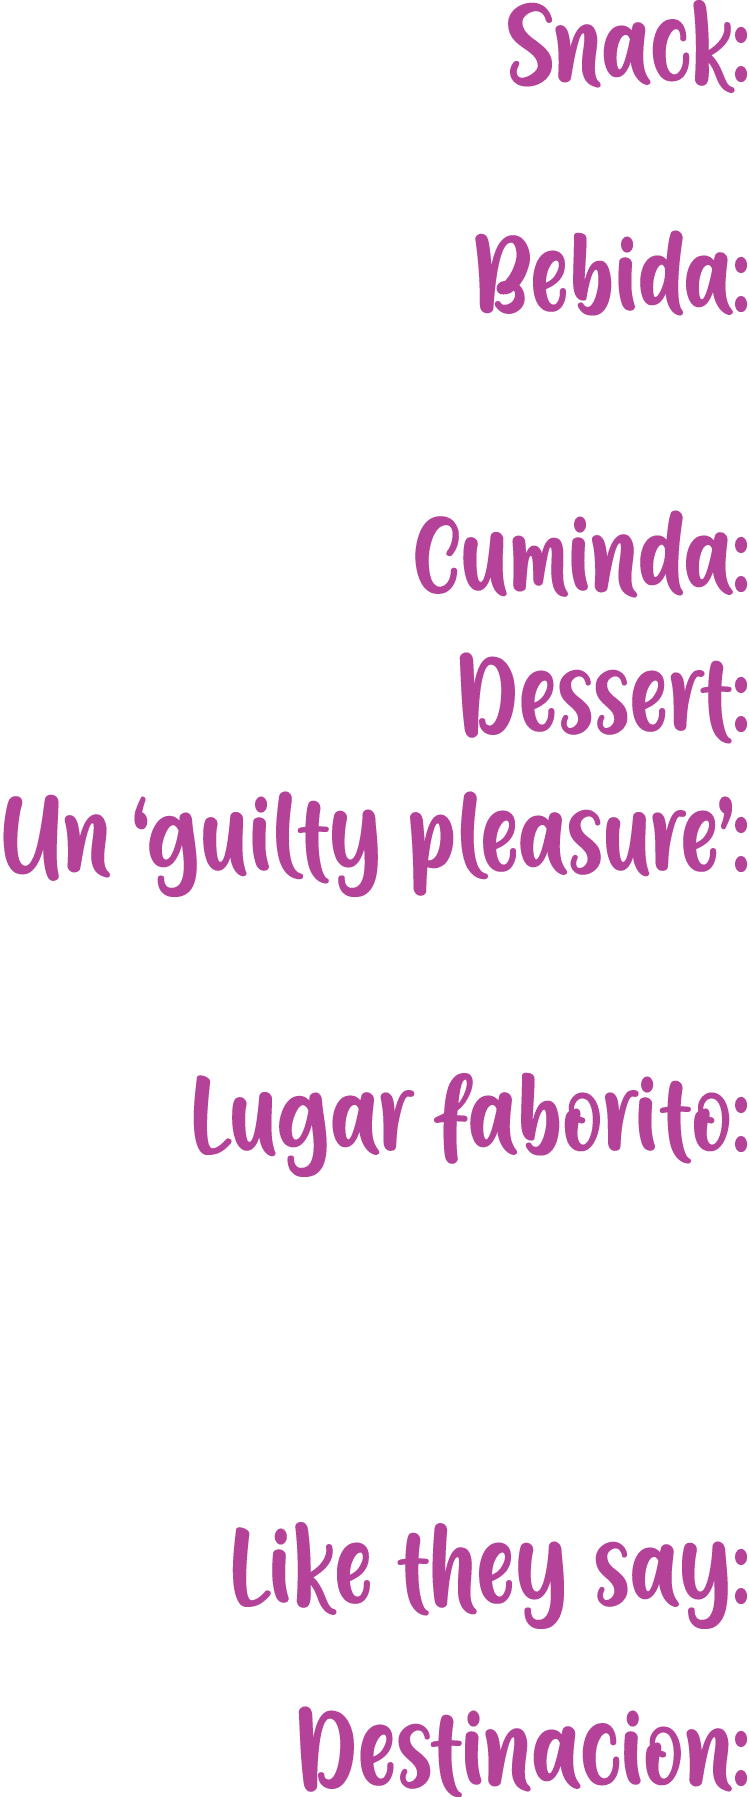 Snack: Bebida: Cuminda: Dessert: Un ‘guilty pleasure’: Lugar faborito: Like they say: Destinacion: